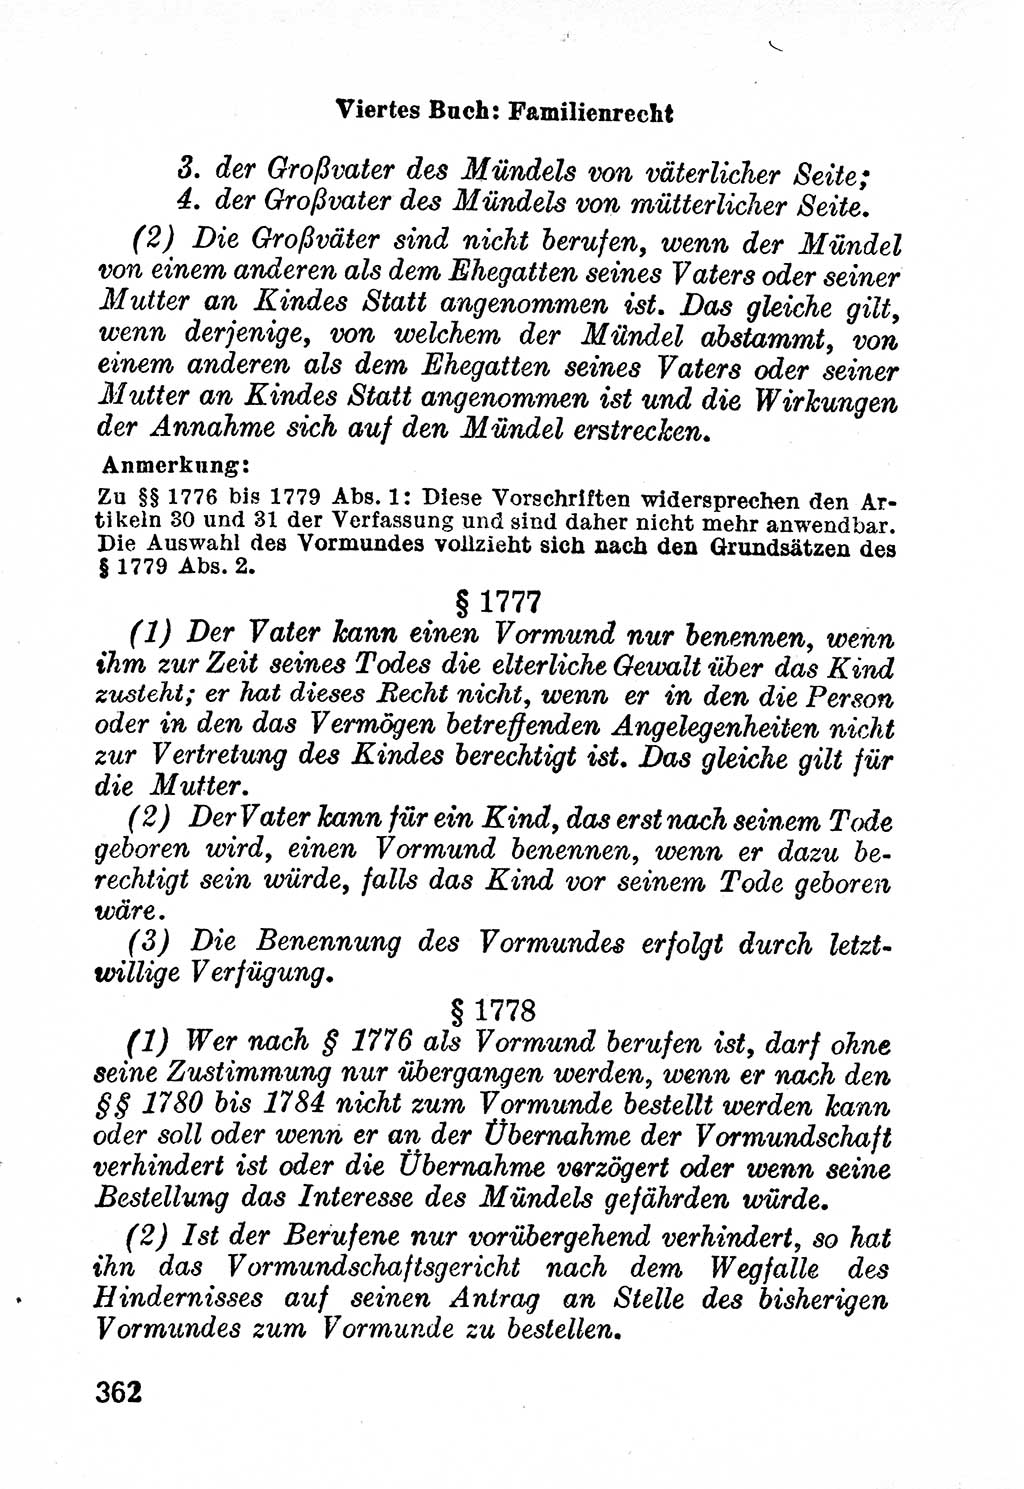 Bürgerliches Gesetzbuch (BGB) nebst wichtigen Nebengesetzen [Deutsche Demokratische Republik (DDR)] 1956, Seite 362 (BGB Nebenges. DDR 1956, S. 362)